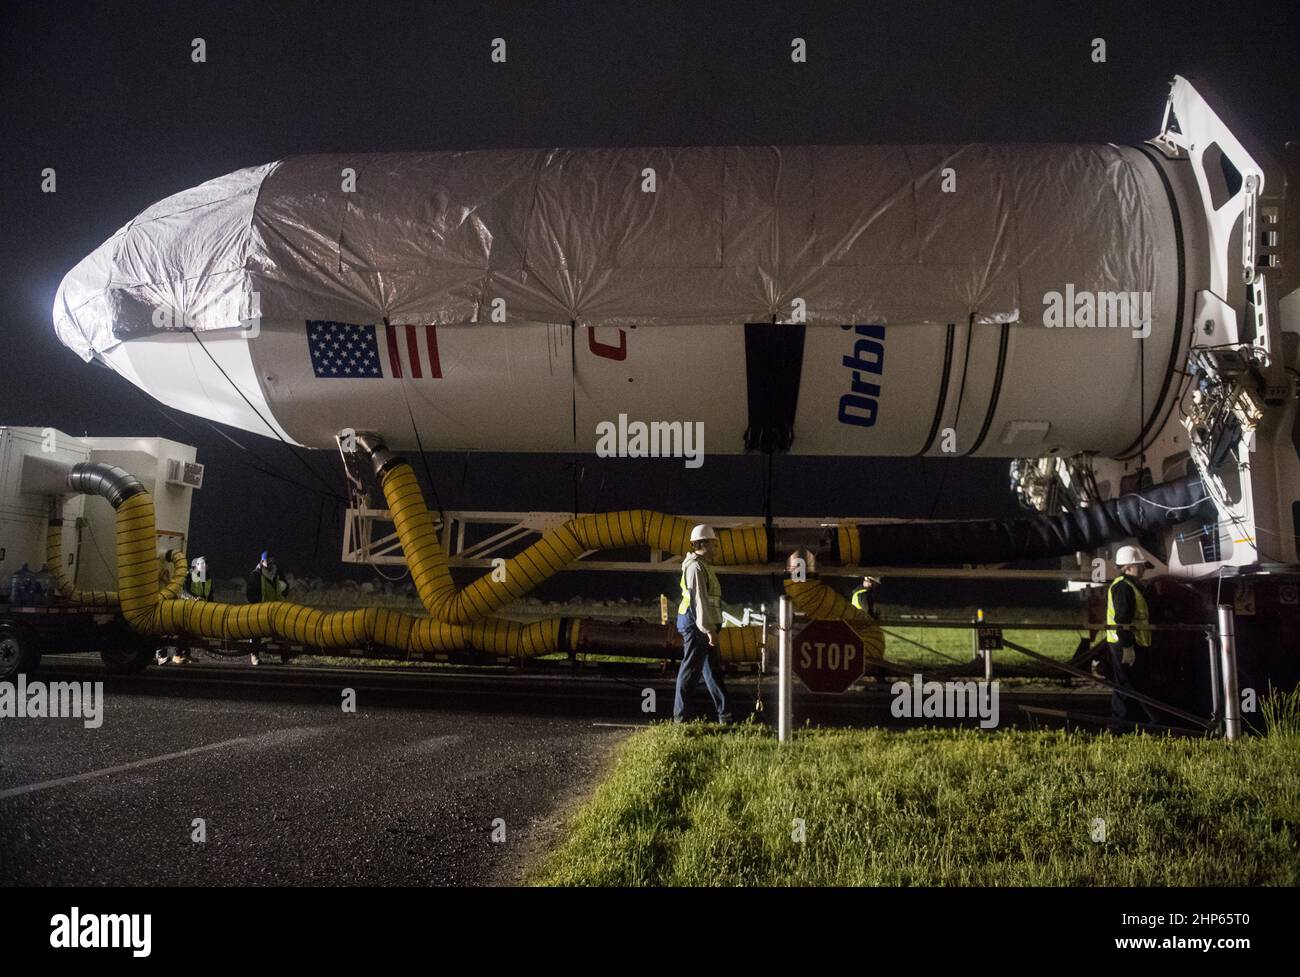 Eine Orbital ATK-Rakete wird beim Start von Pad-0A in der Wallops Flight Facility am Donnerstag, den 17. Mai 2018 in Wallops Island, VA, gesehen. Die Antares wird eine Cygnus-Raumsonde auf einer Frachterückführungsmission zur Internationalen Raumstation starten. Stockfoto